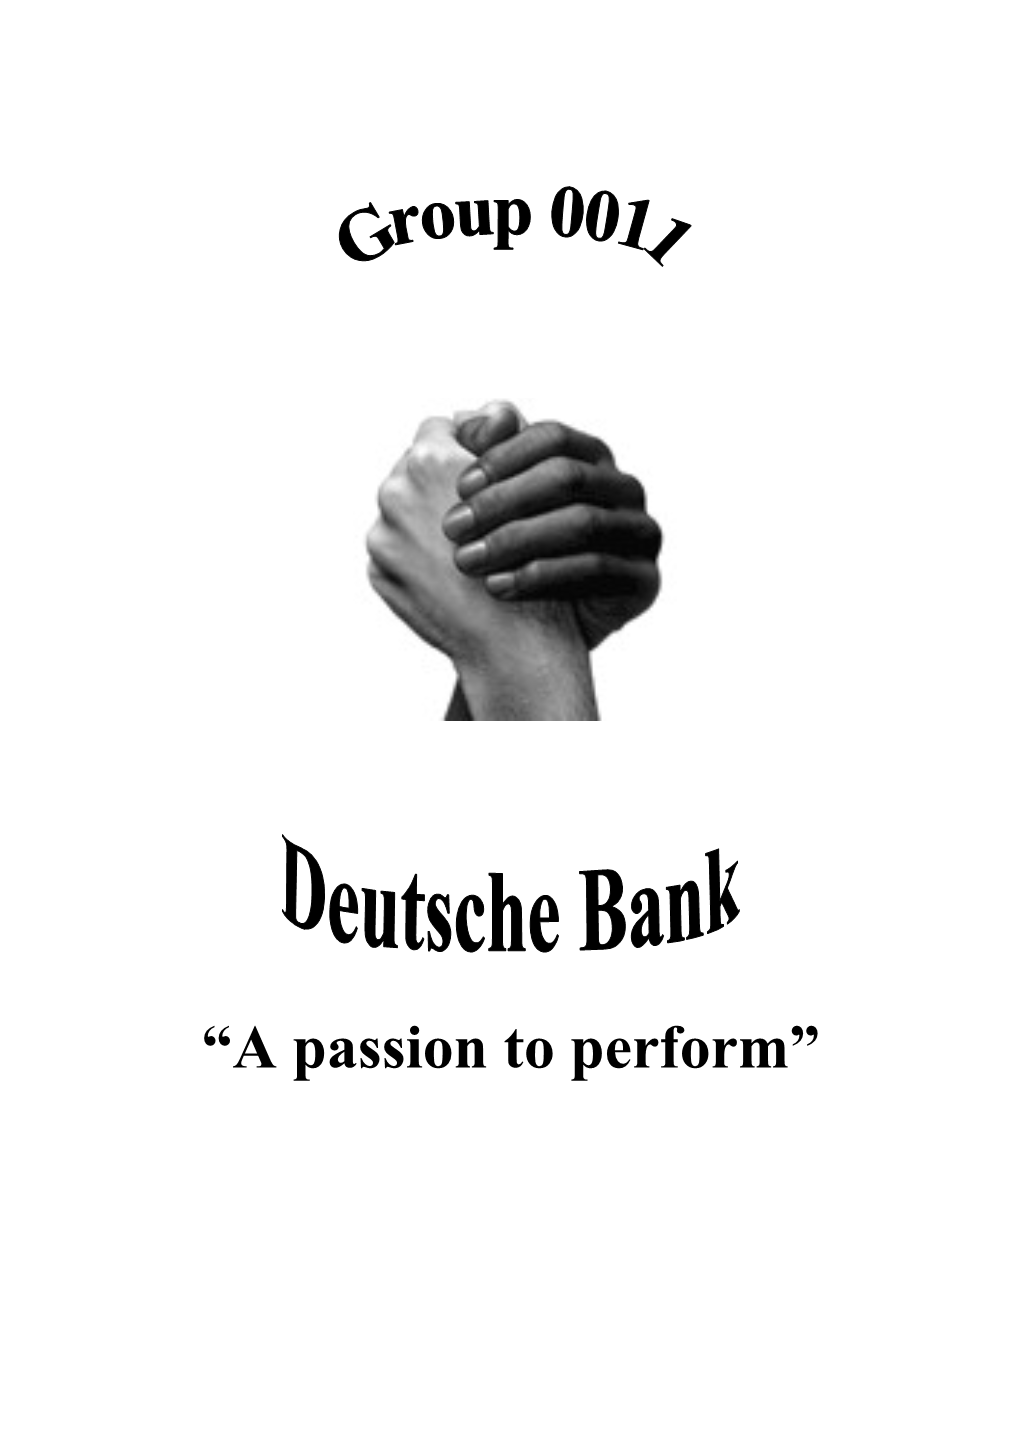 2. General Information About Deutsche Bank 4